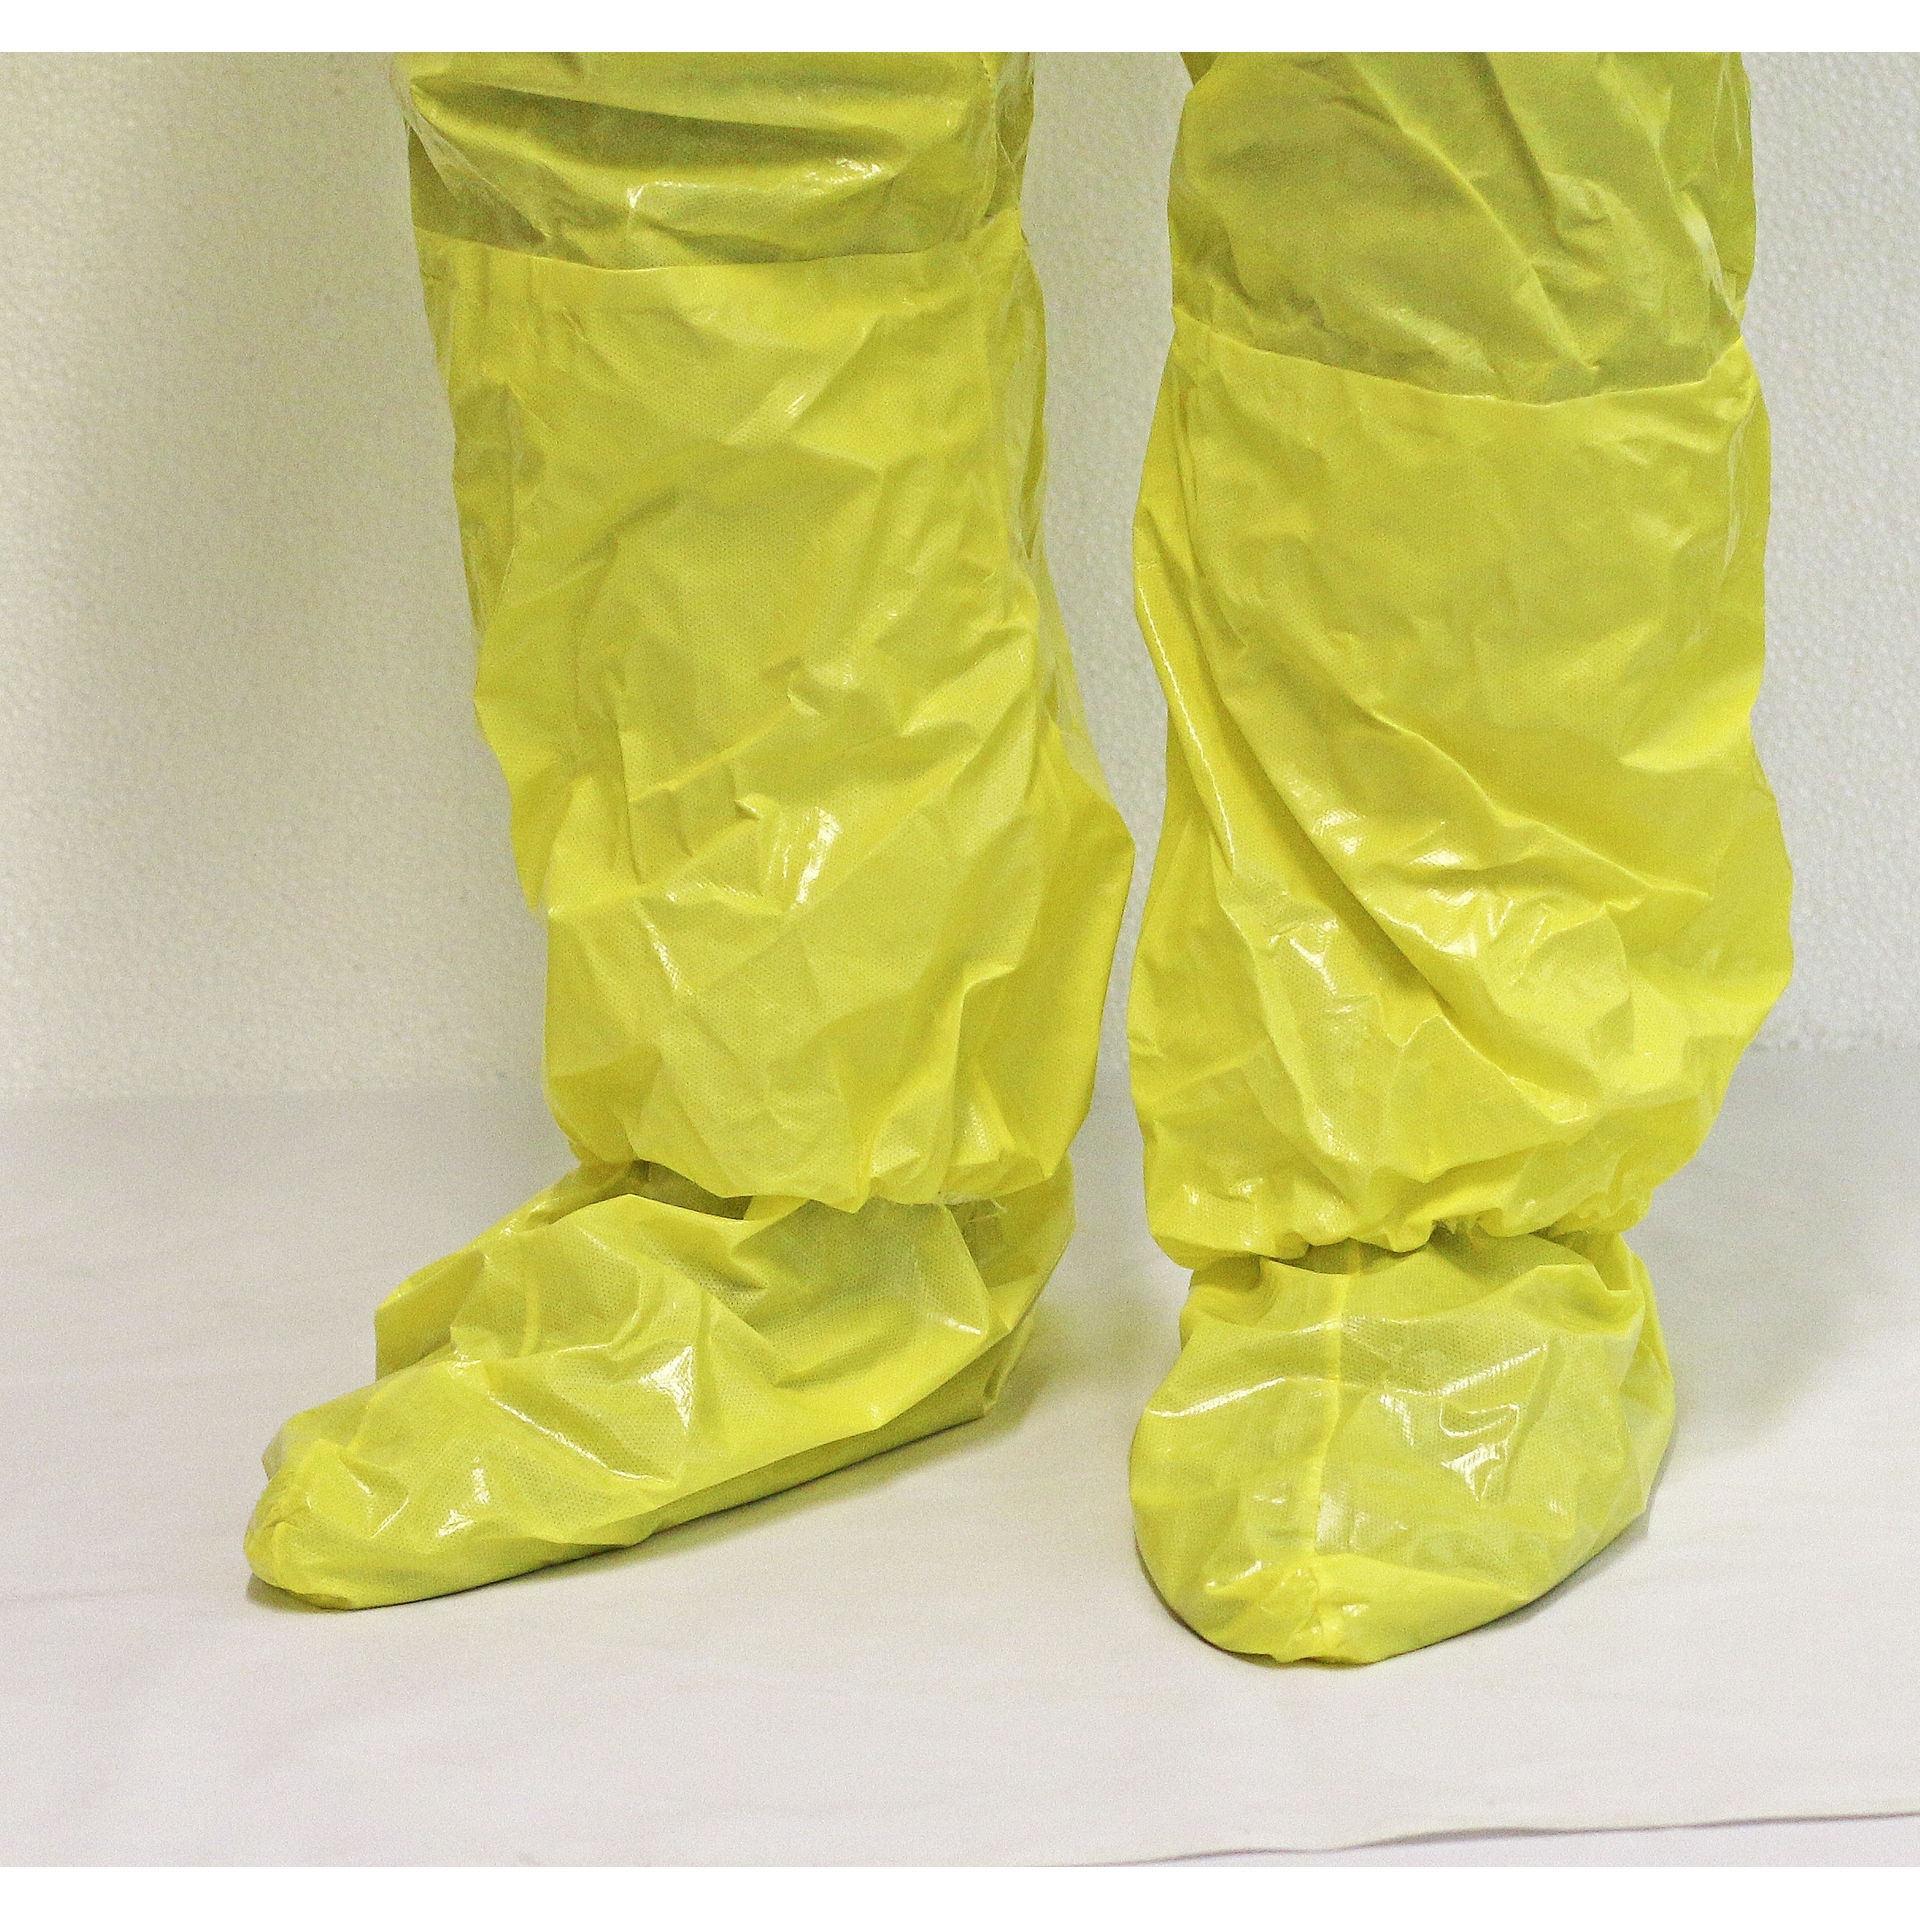 ASATEX-Hygiene, CoverChem Chemikalien-Schutzoverall Schutzanzug CC301, gelb, VE = 15 Stk.